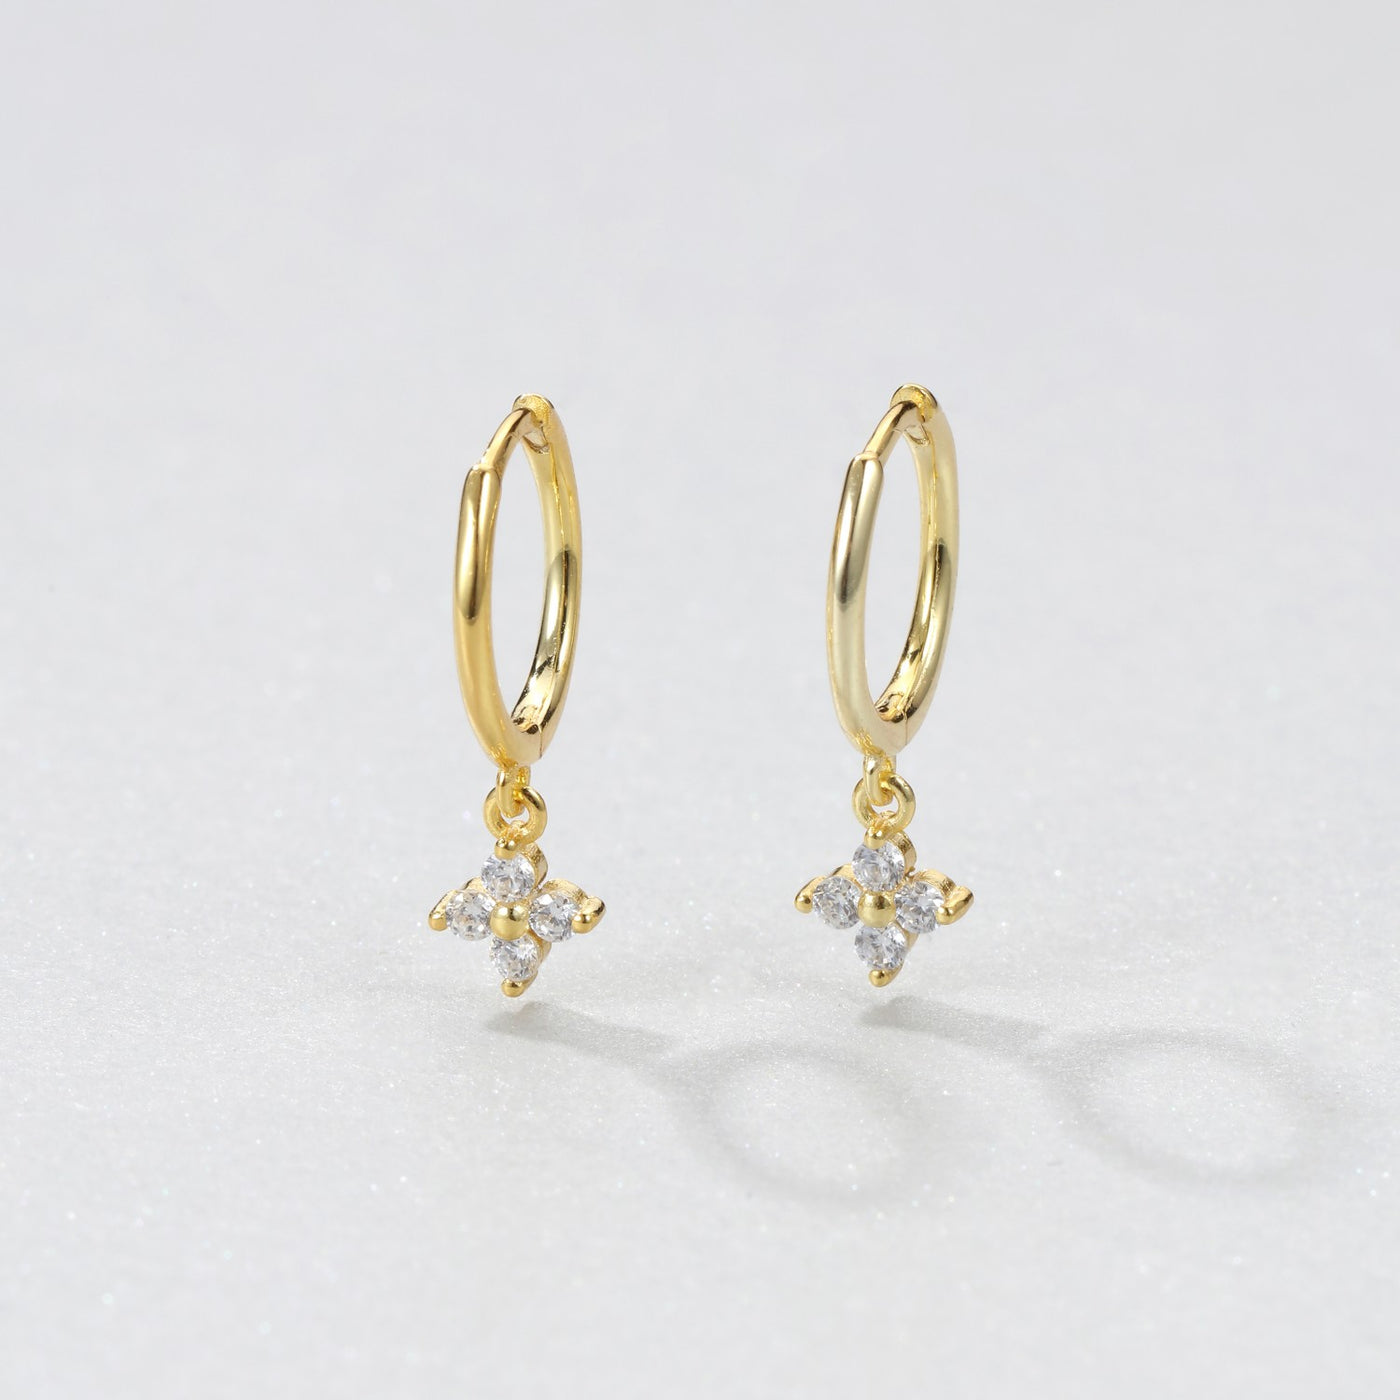 Gemstone Huggie Earrings Sterling Silver Gold